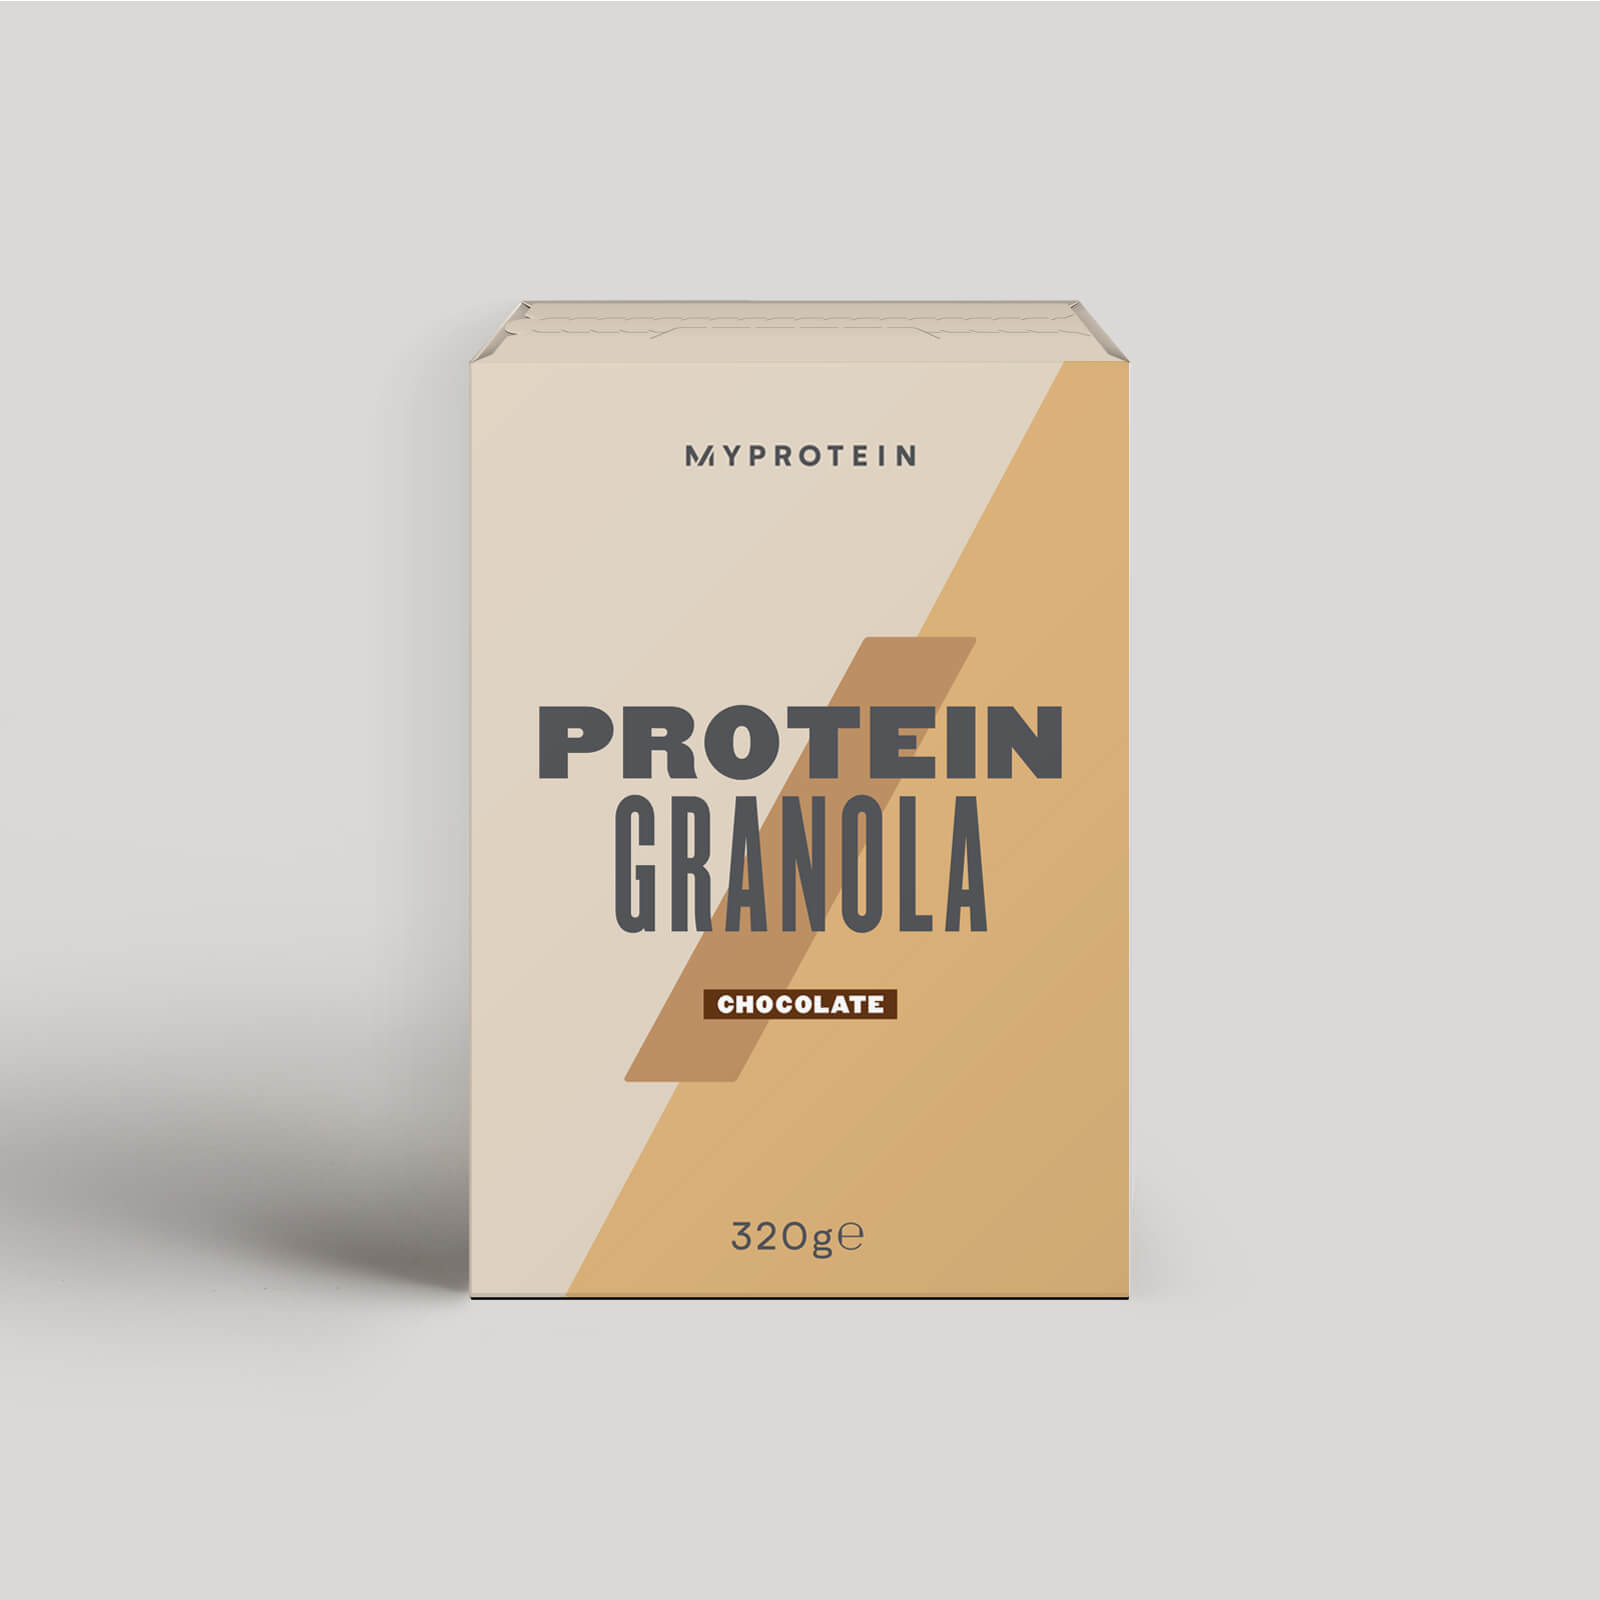 Myprotein Protein Granola - 320g - Chocolate